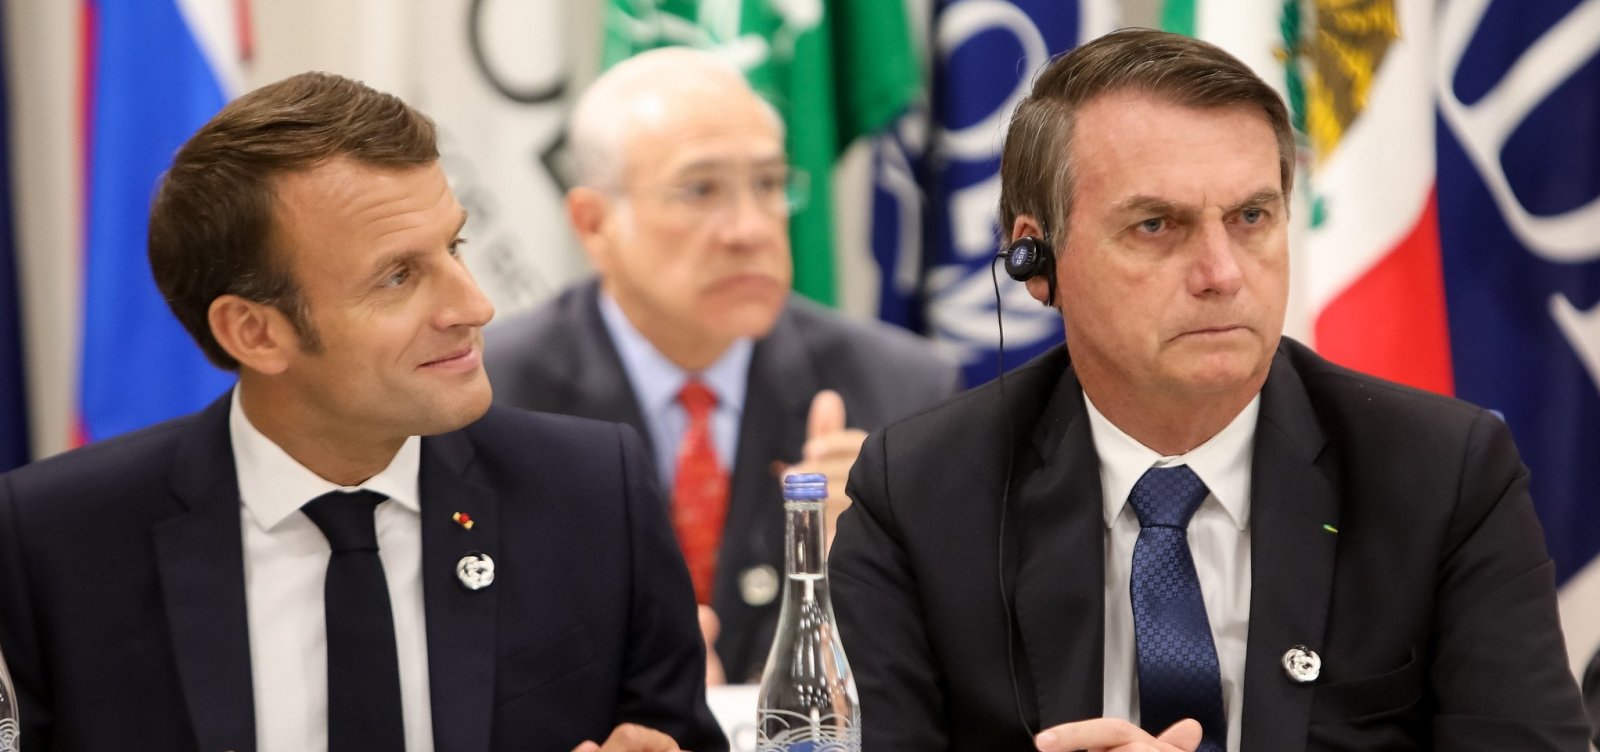 Após Bolsonaro 'mentir' para Macron, França vai rejeitar acordo da União Europeia com Mercosul